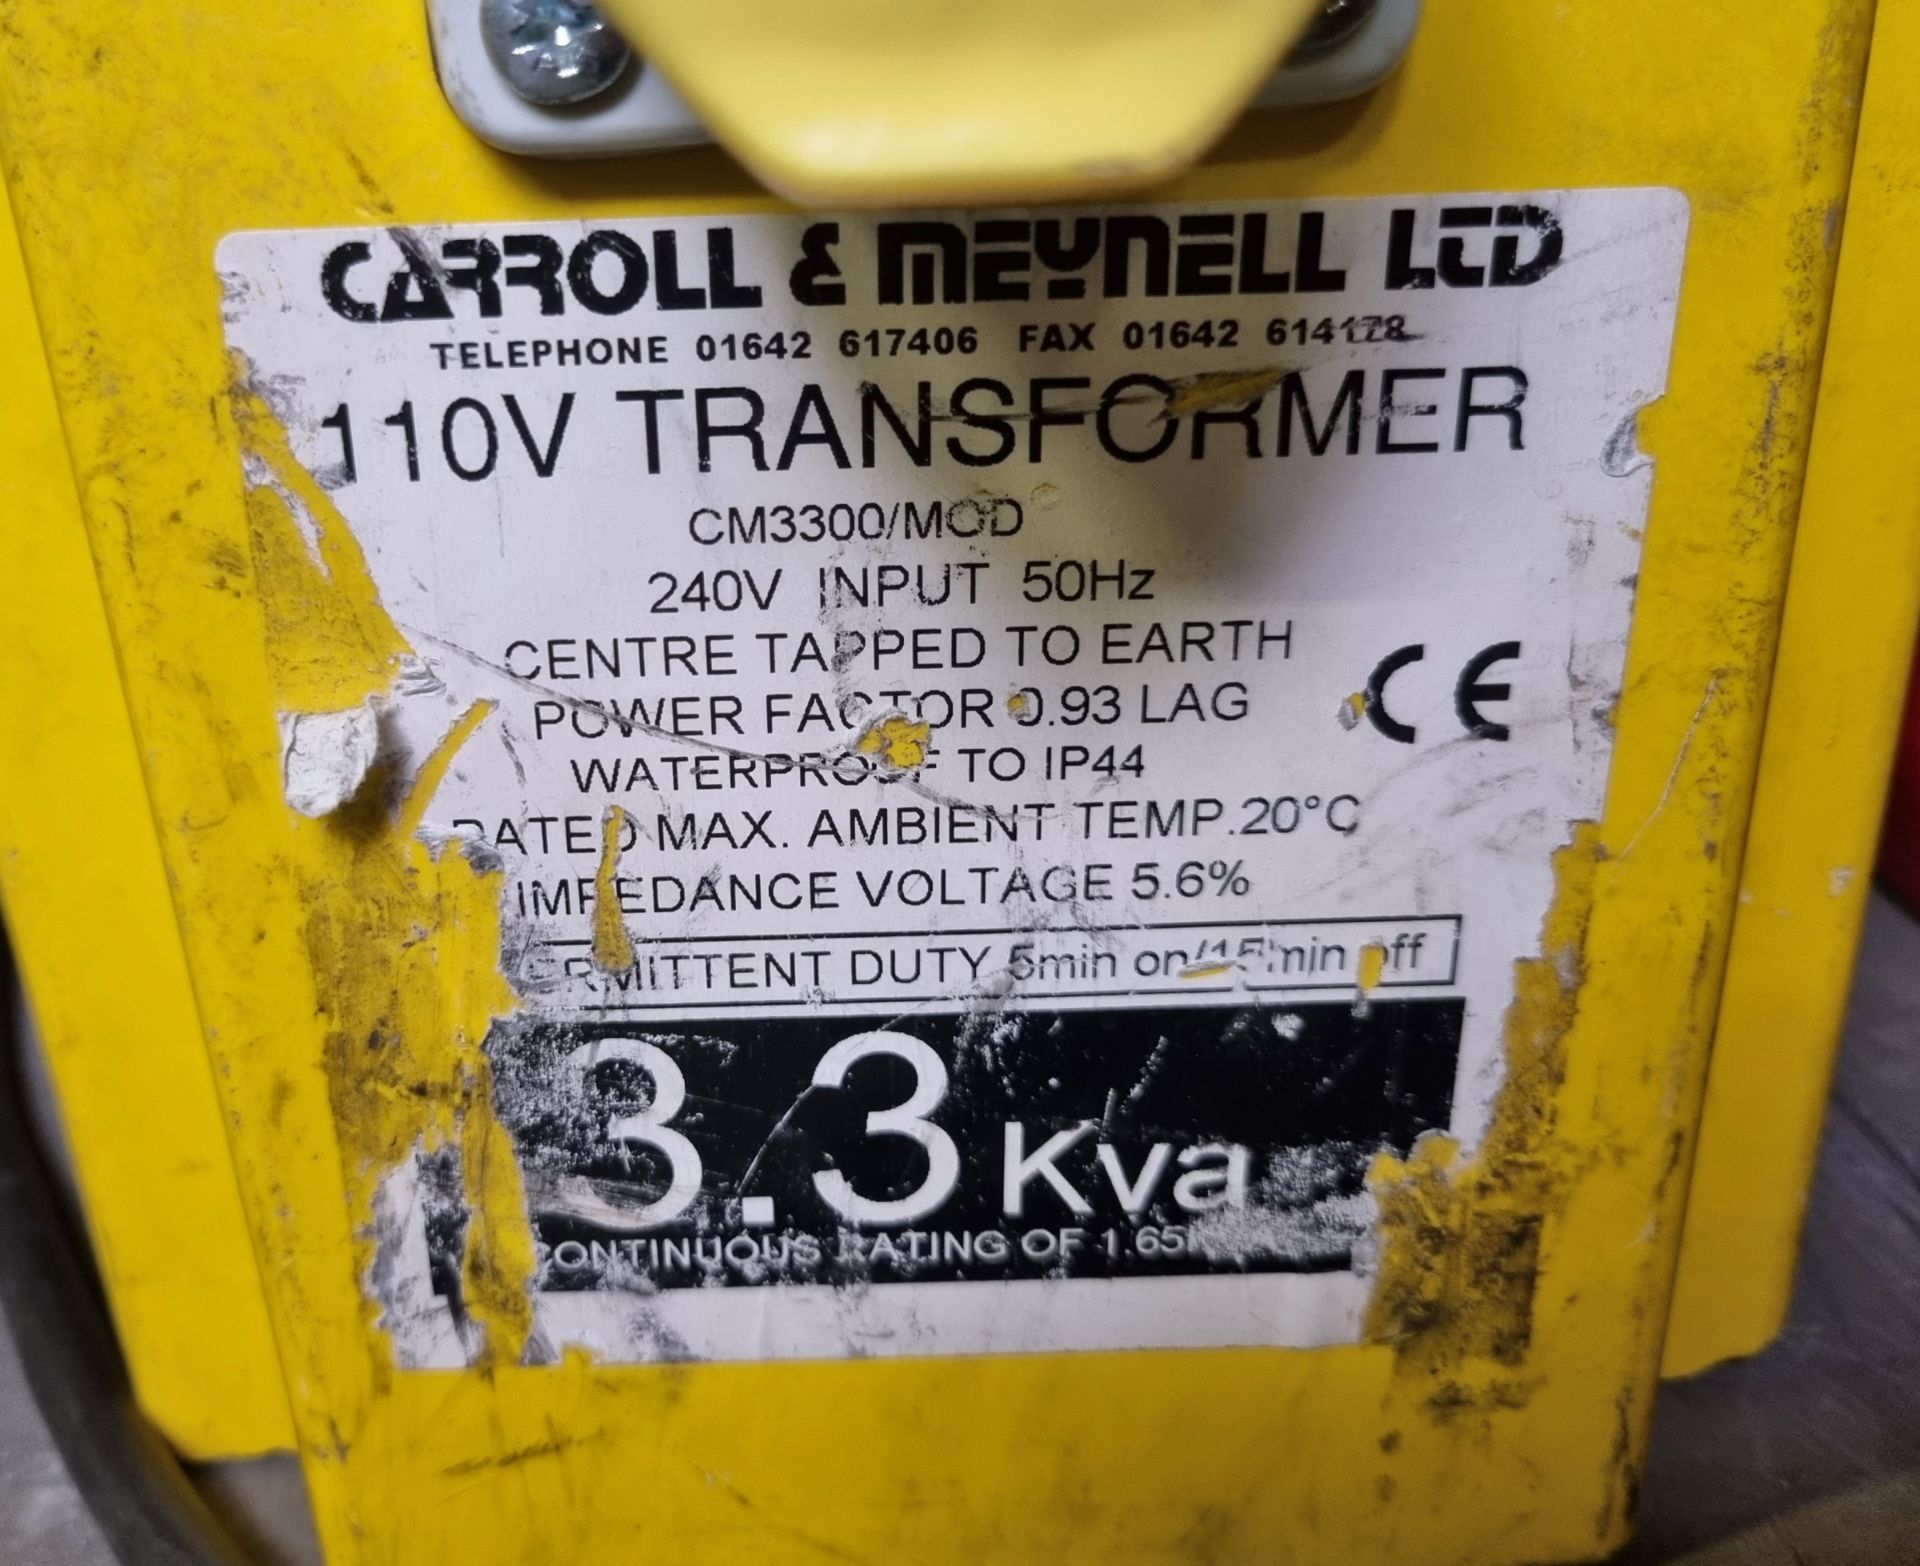 Carroll & Meynell cm3300 portable 110V tool transformer - Image 3 of 5